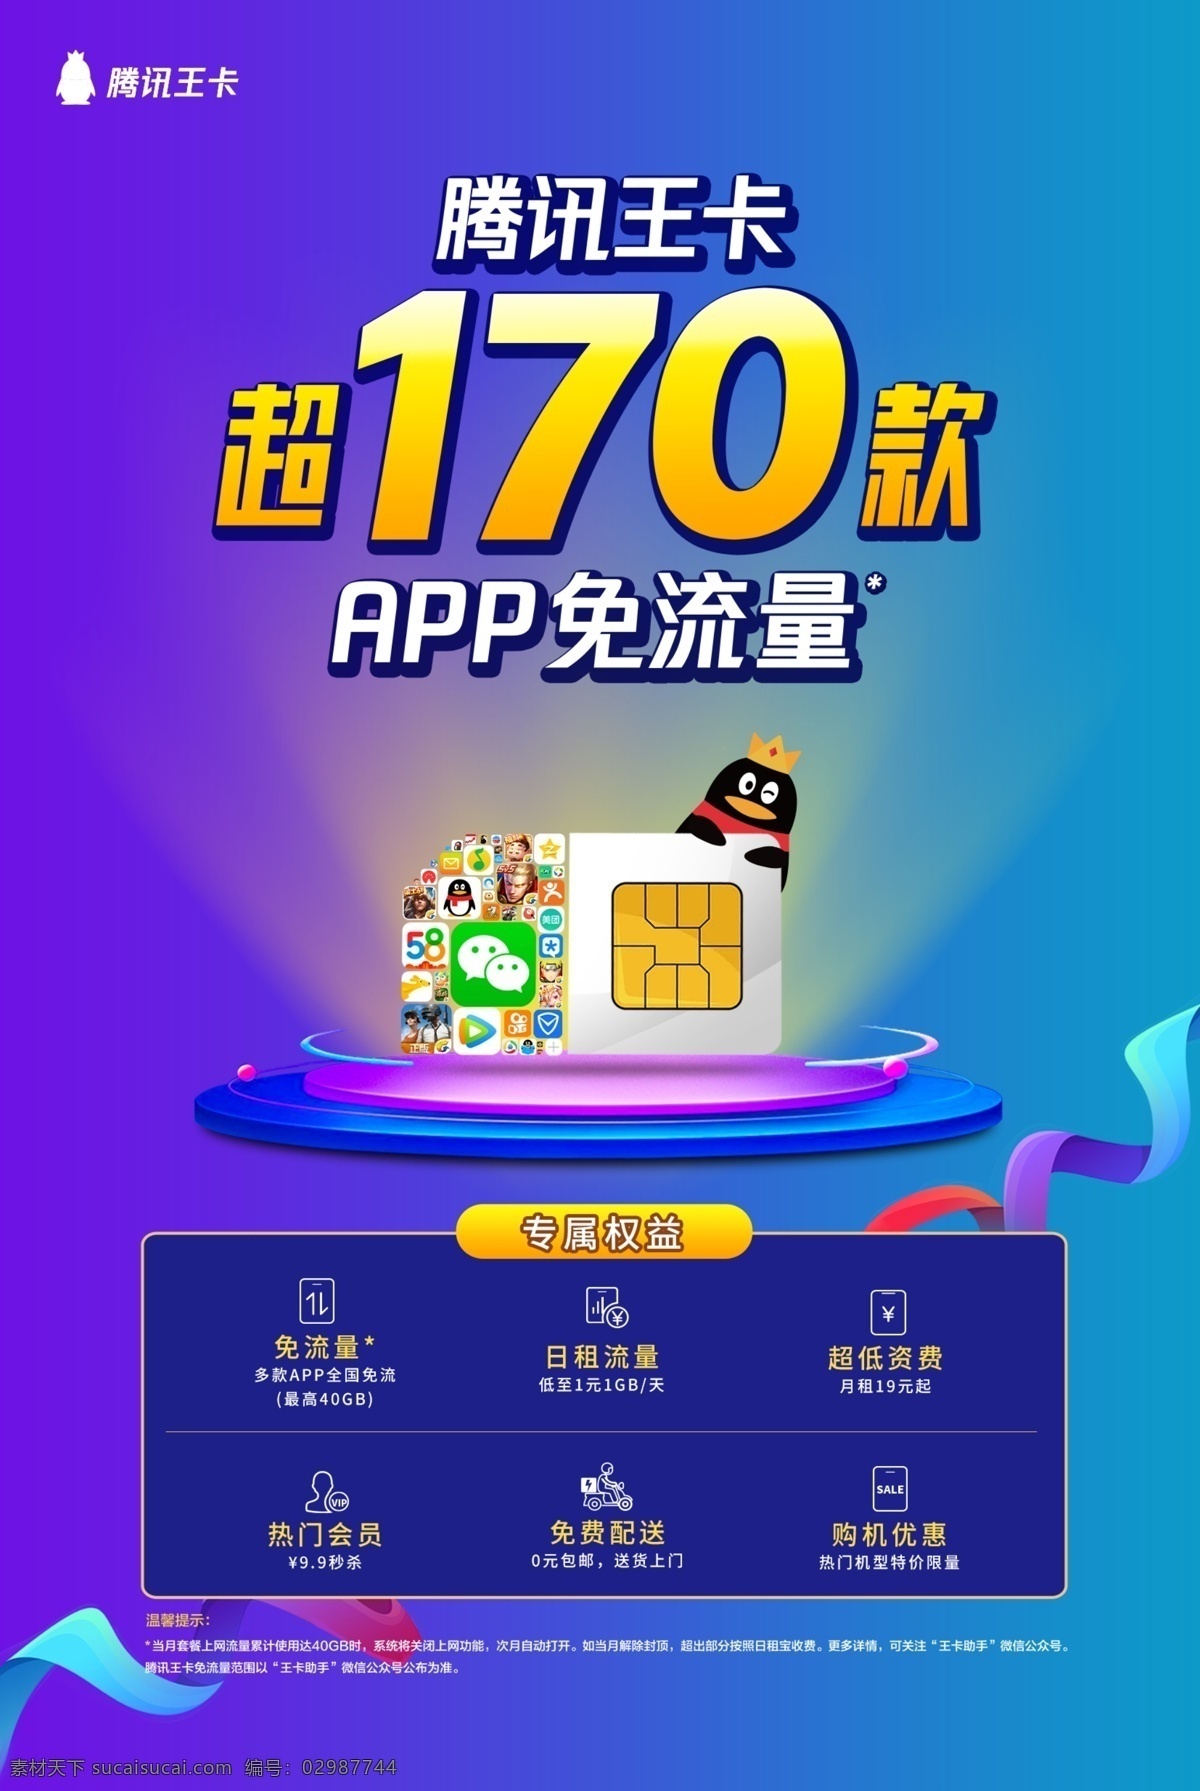 腾讯 王 卡 超 款 app 免 流量 腾讯王卡 超170款 免流量 专属权益